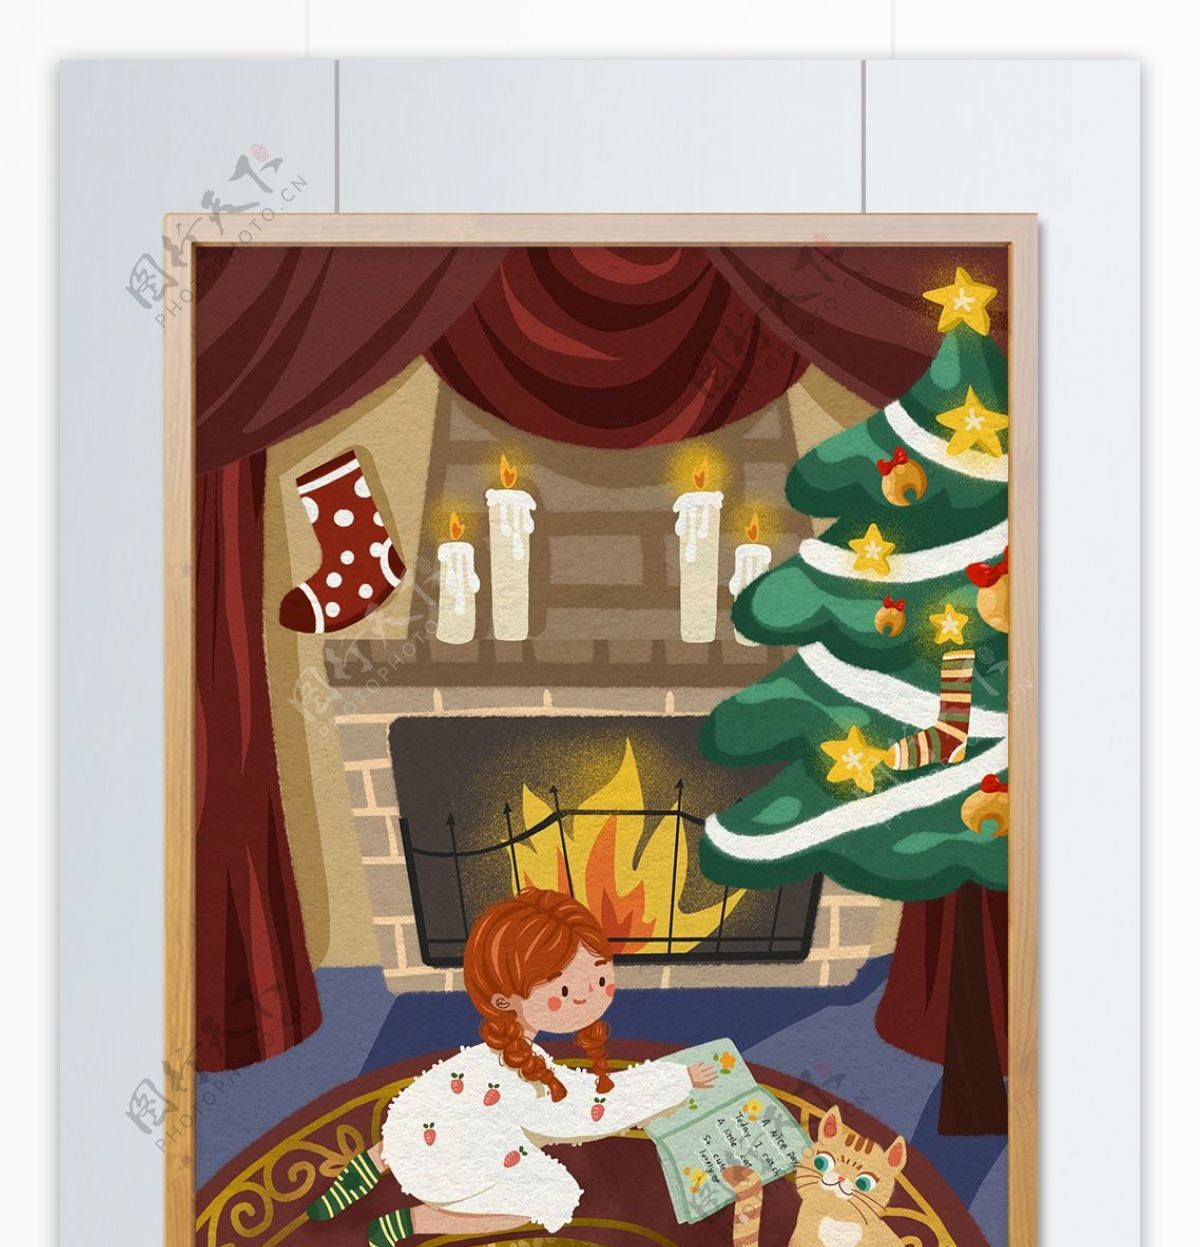 圣诞节小女孩在壁炉前看书和小猫一起玩耍